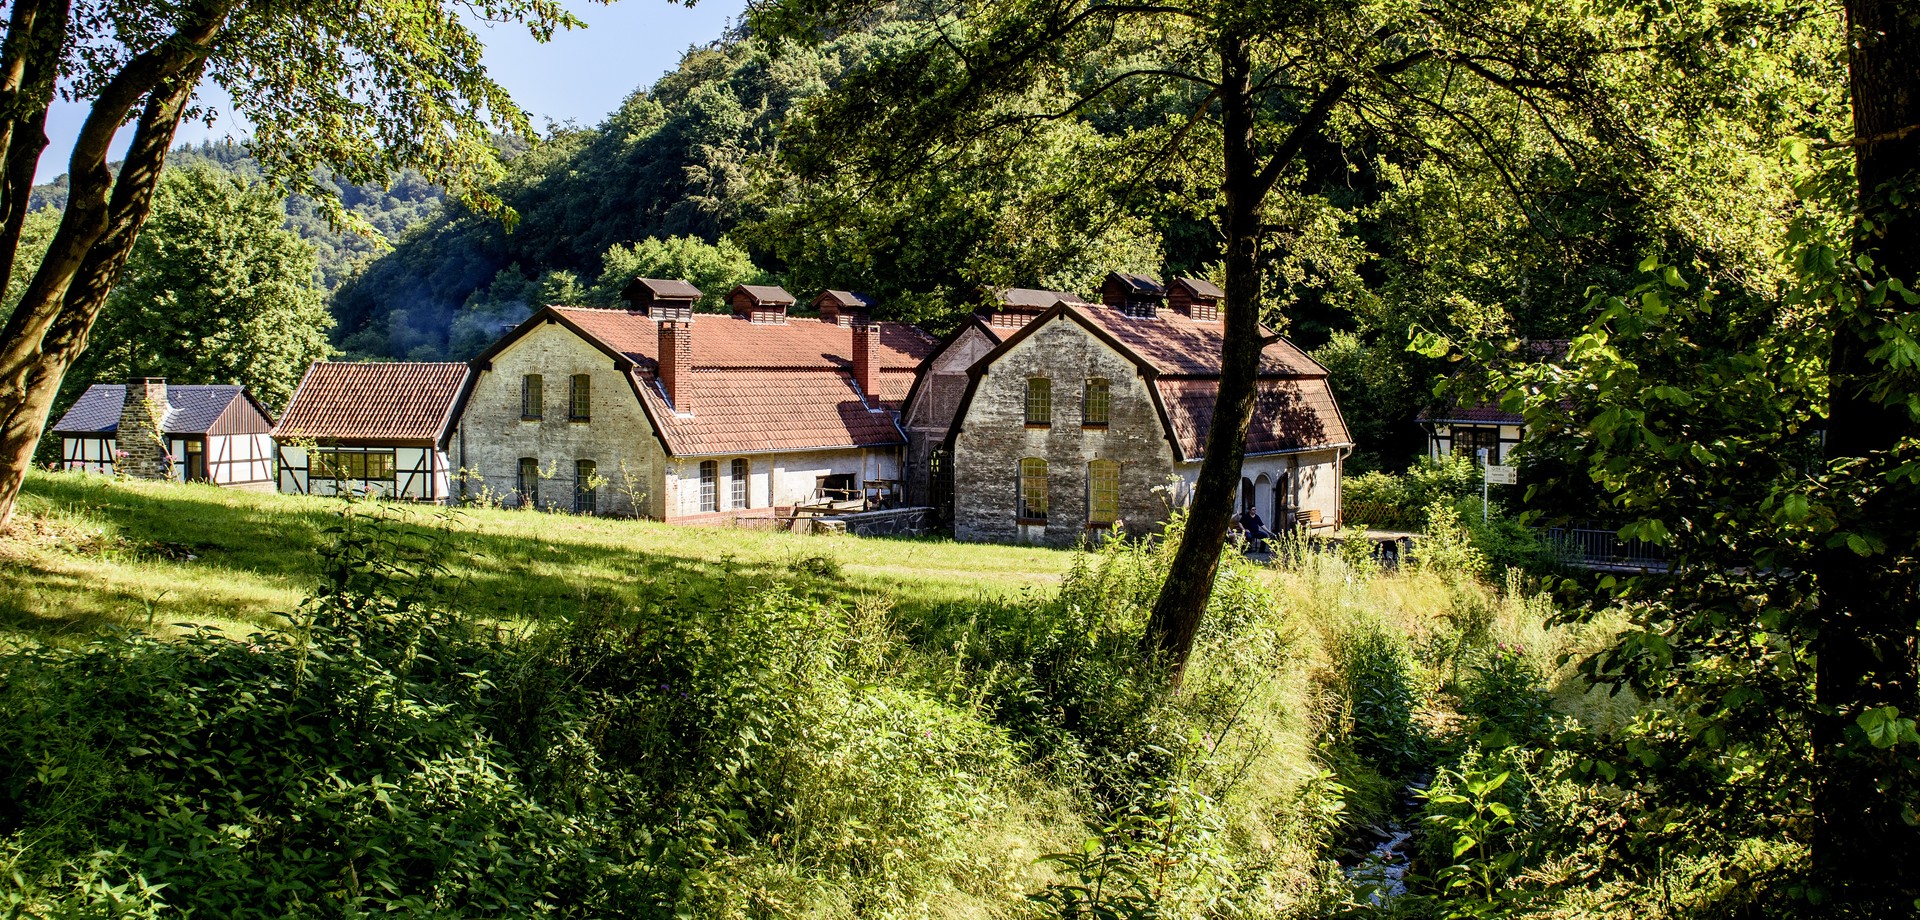 Historische Häuser umgeben von Wald und Wiese